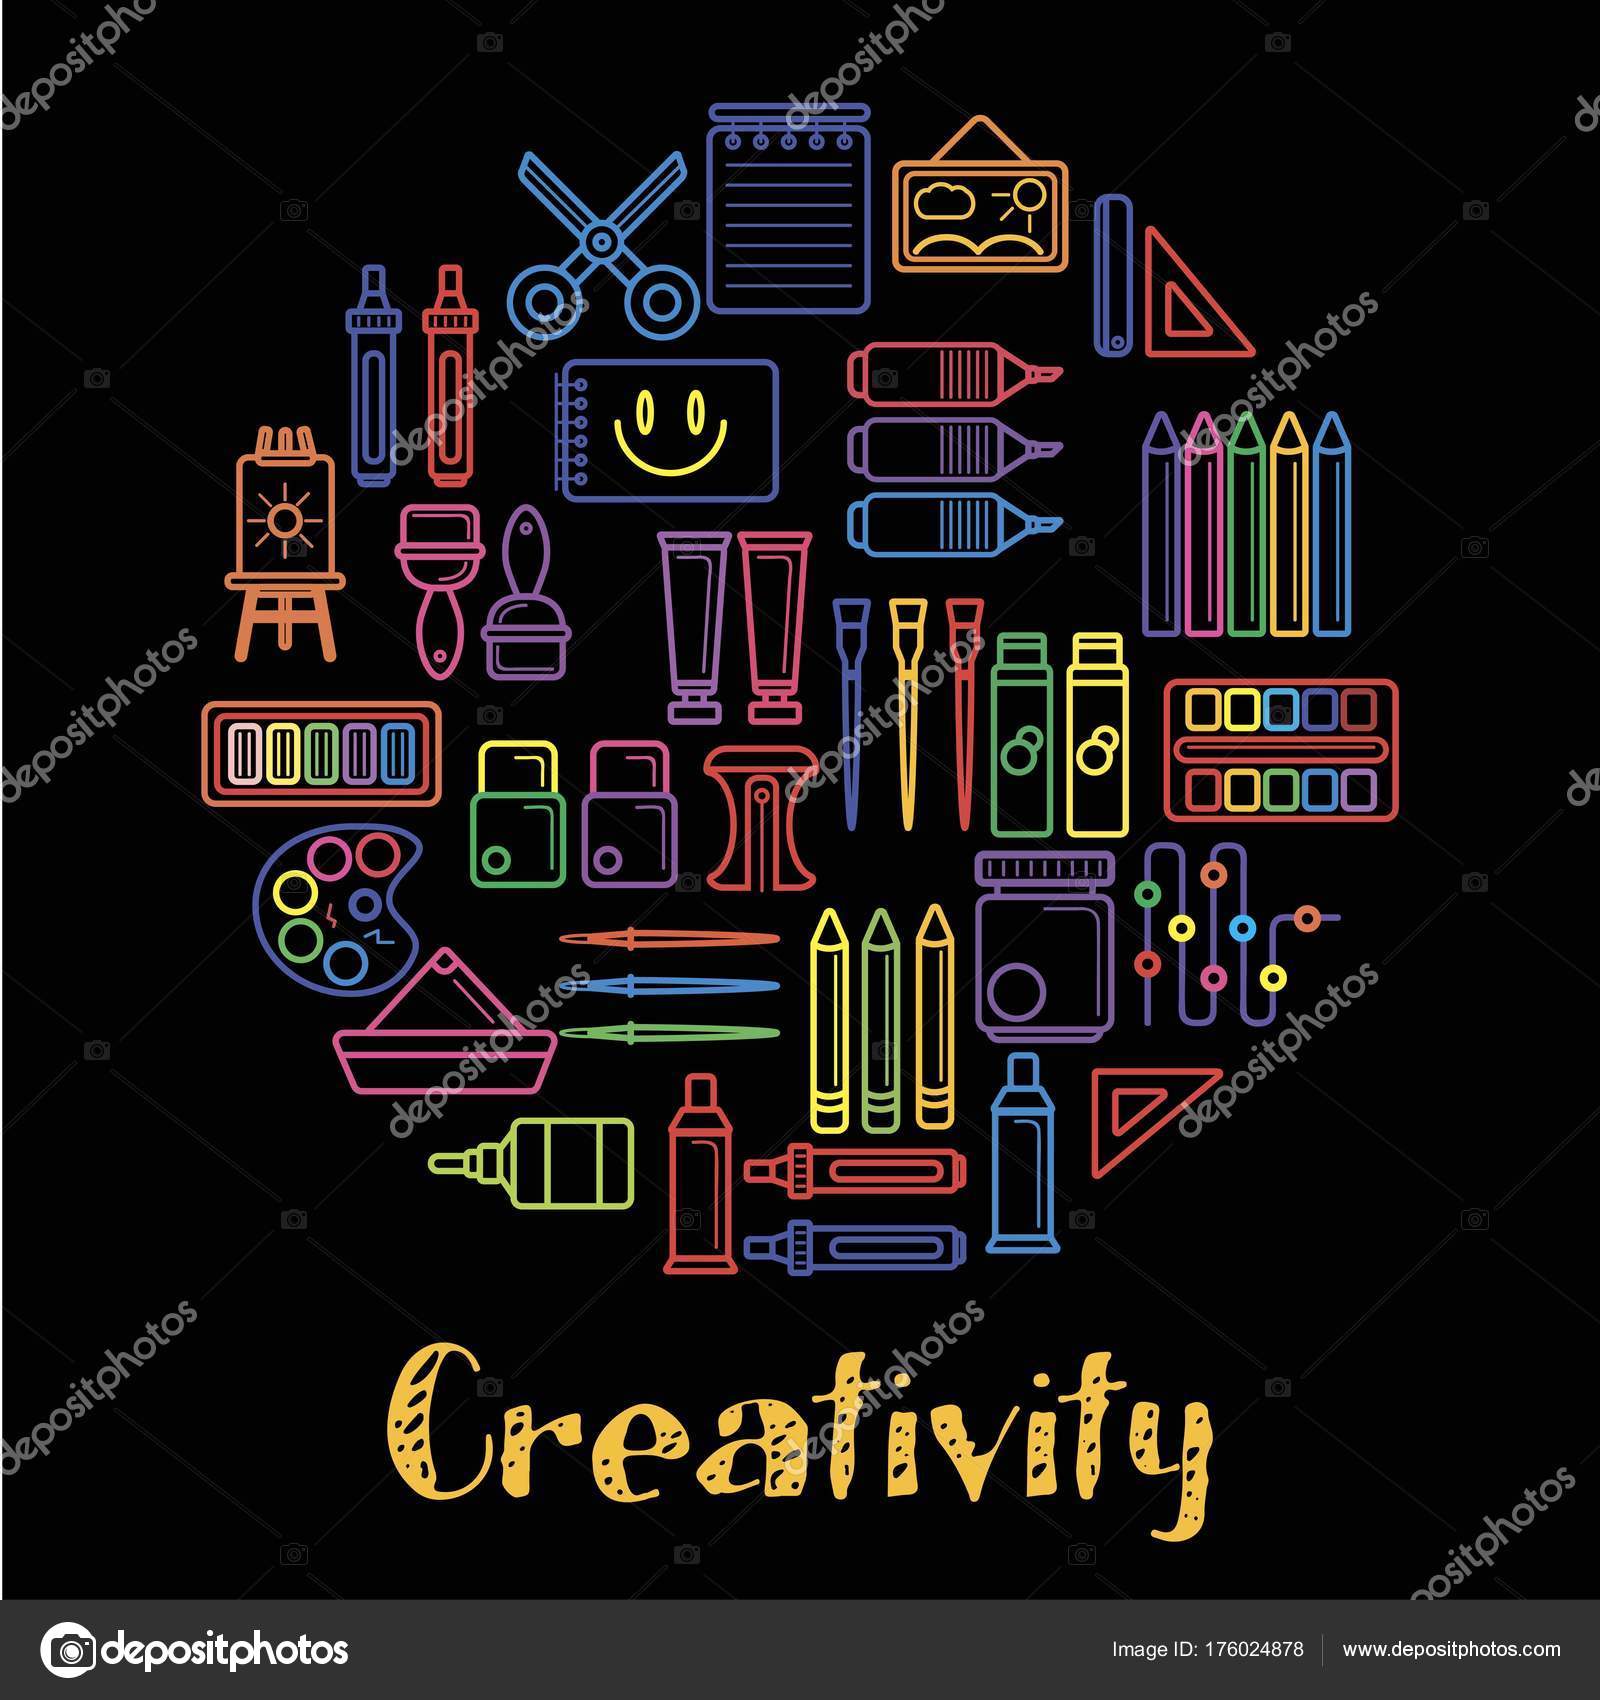 https://st3.depositphotos.com/1028367/17602/v/1600/depositphotos_176024878-stock-illustration-kids-creativity-children-art-design.jpg